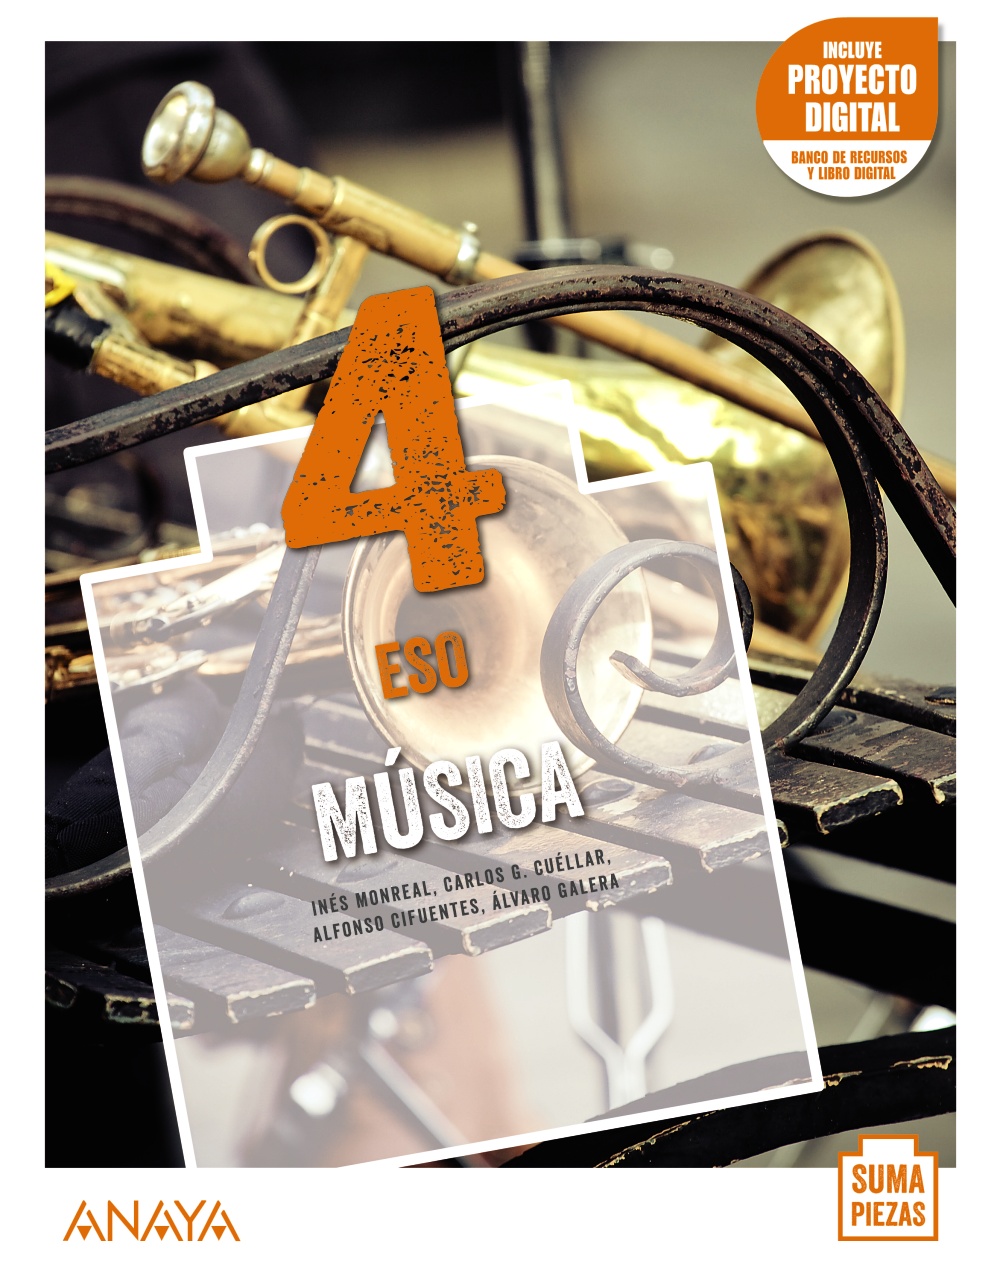 Solucionario Musica 4 ESO Anaya Suma Piezas PDF Ejercicios Resueltos-pdf